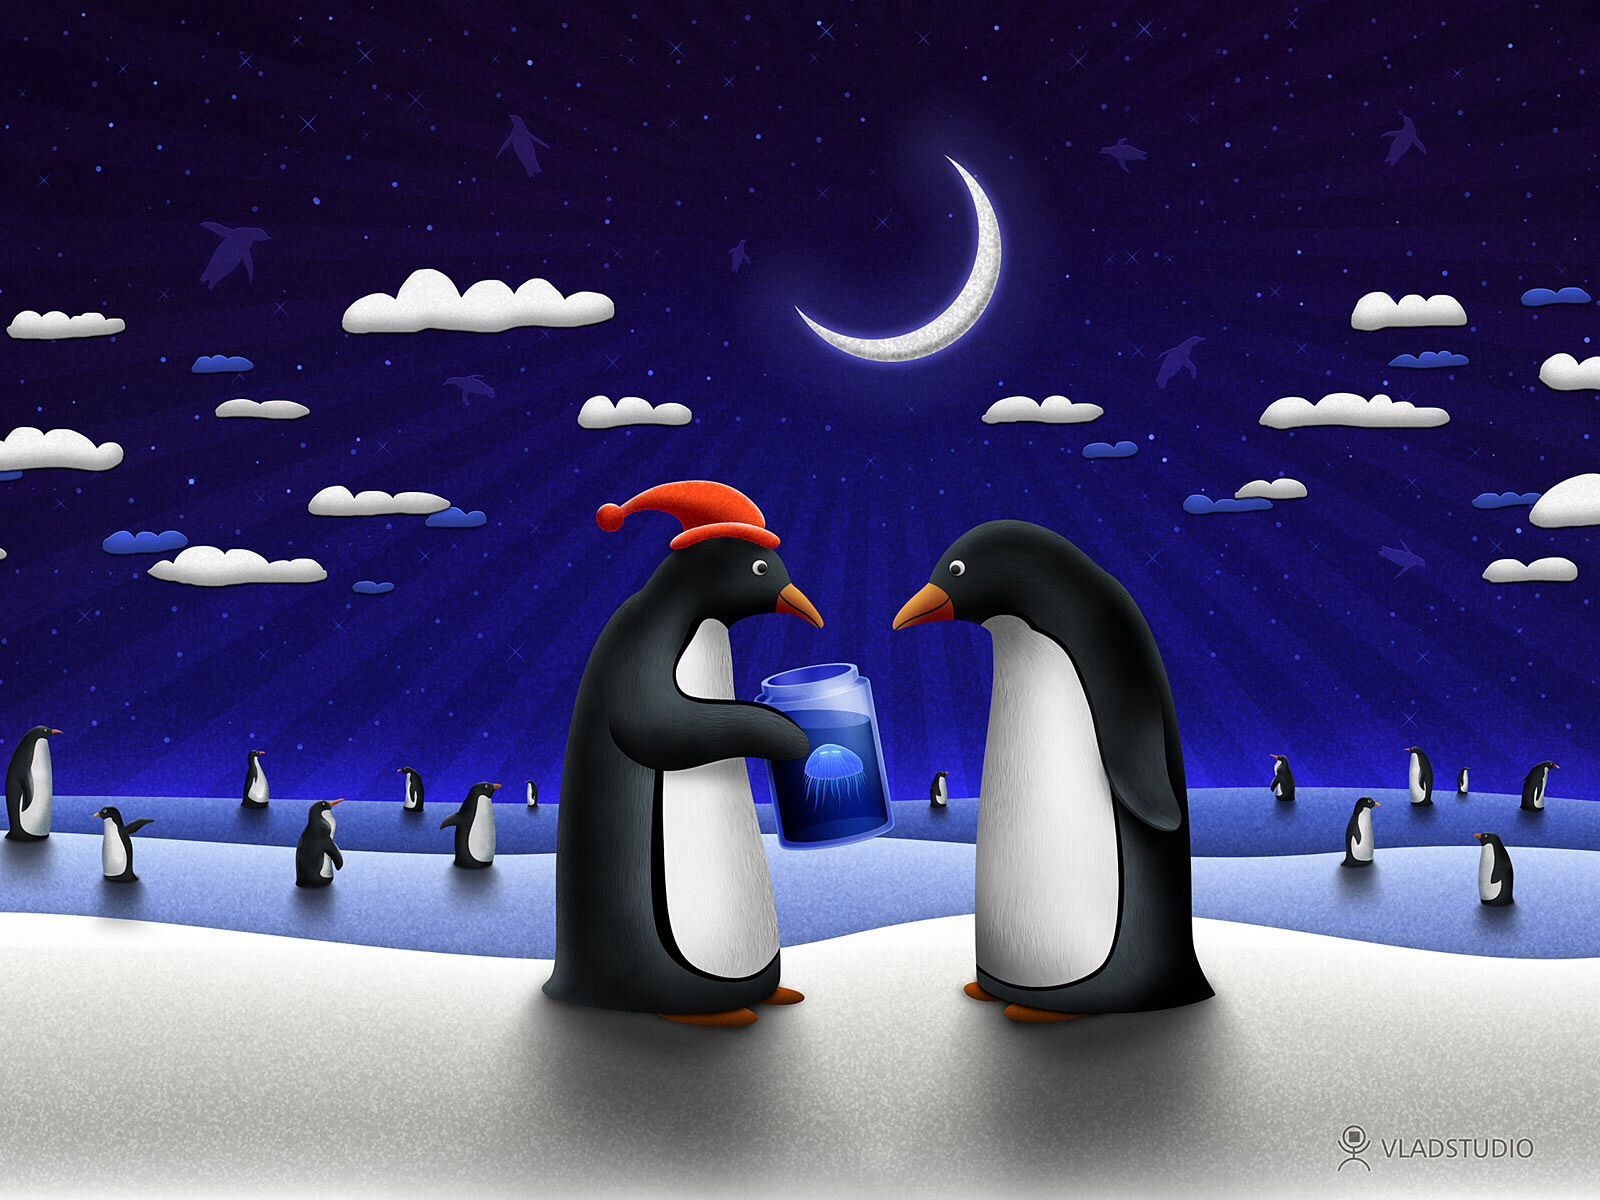 Penguin 's Christmad. Christmas desktop wallpaper, Free christmas desktop wallpaper, Christmas desktop